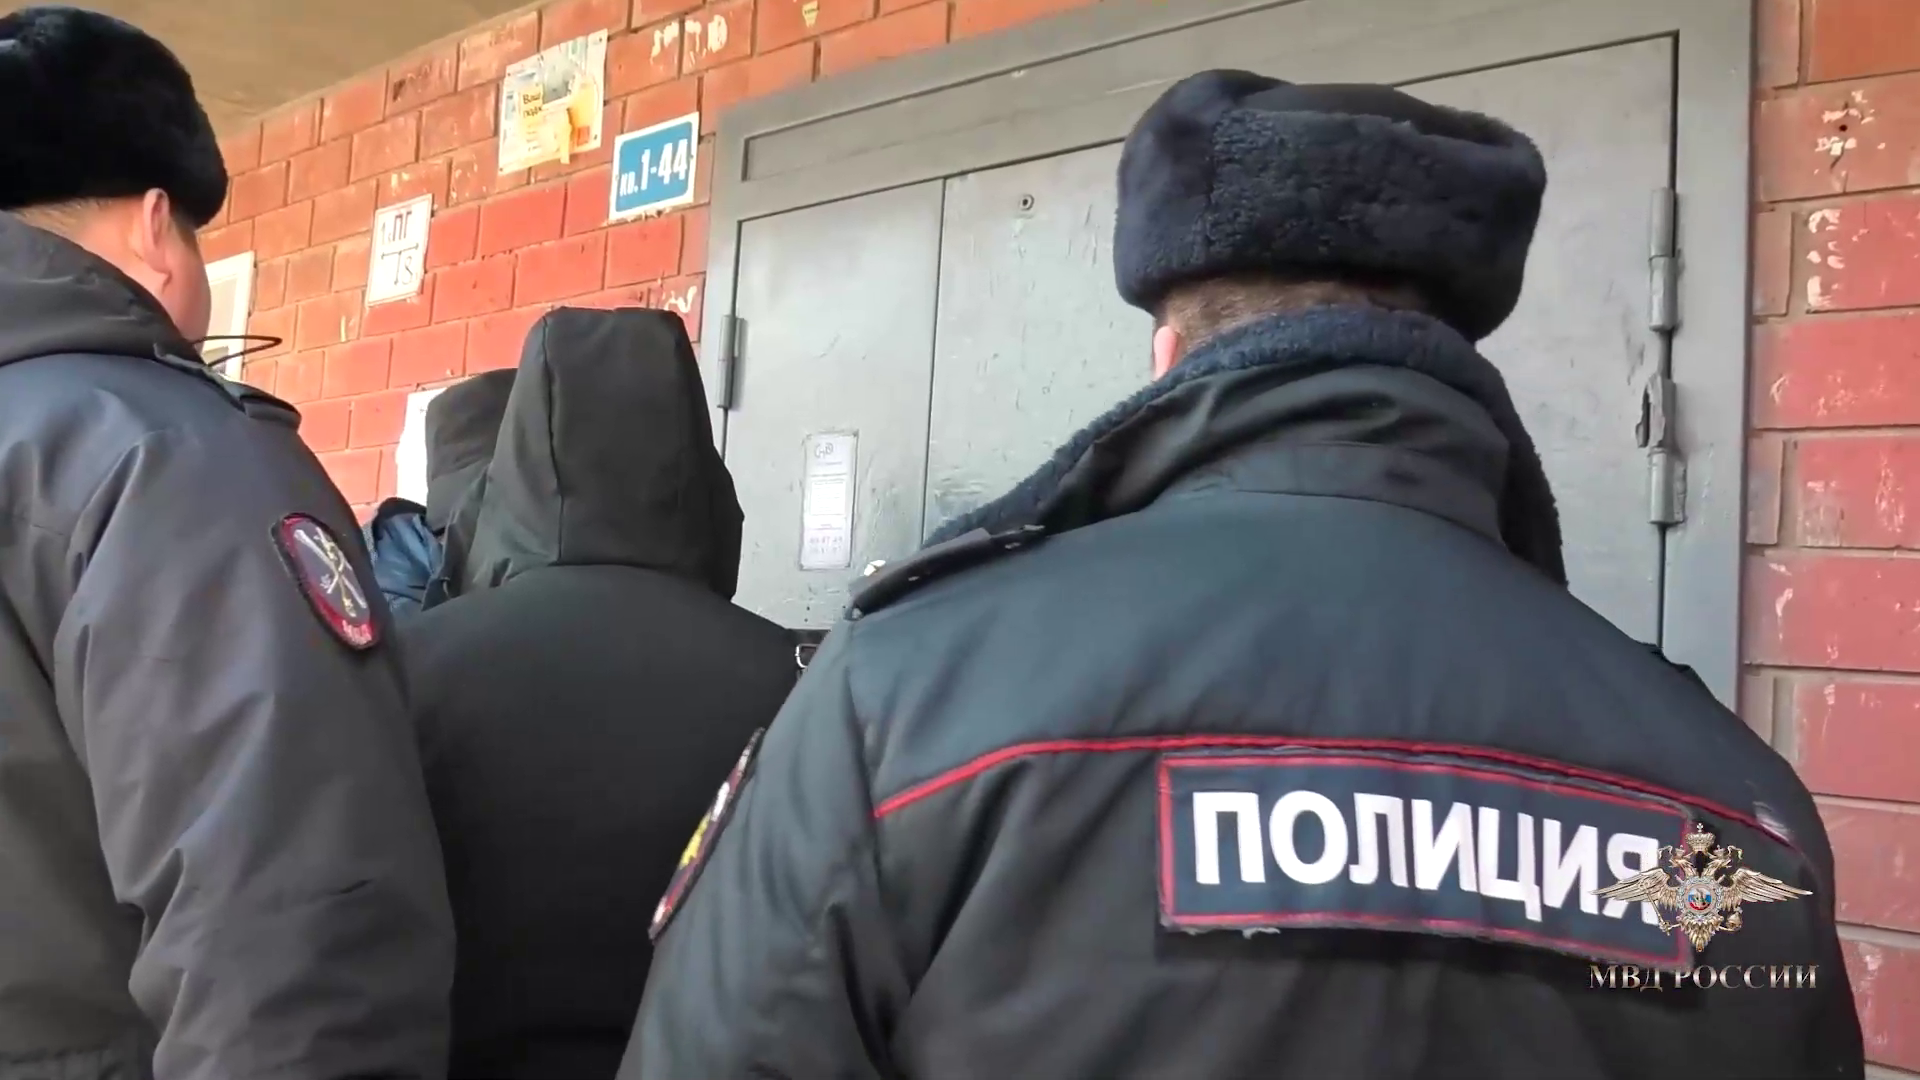 Ирина Волк: В Иркутске полицейские помогли женщине избежать потери жилища